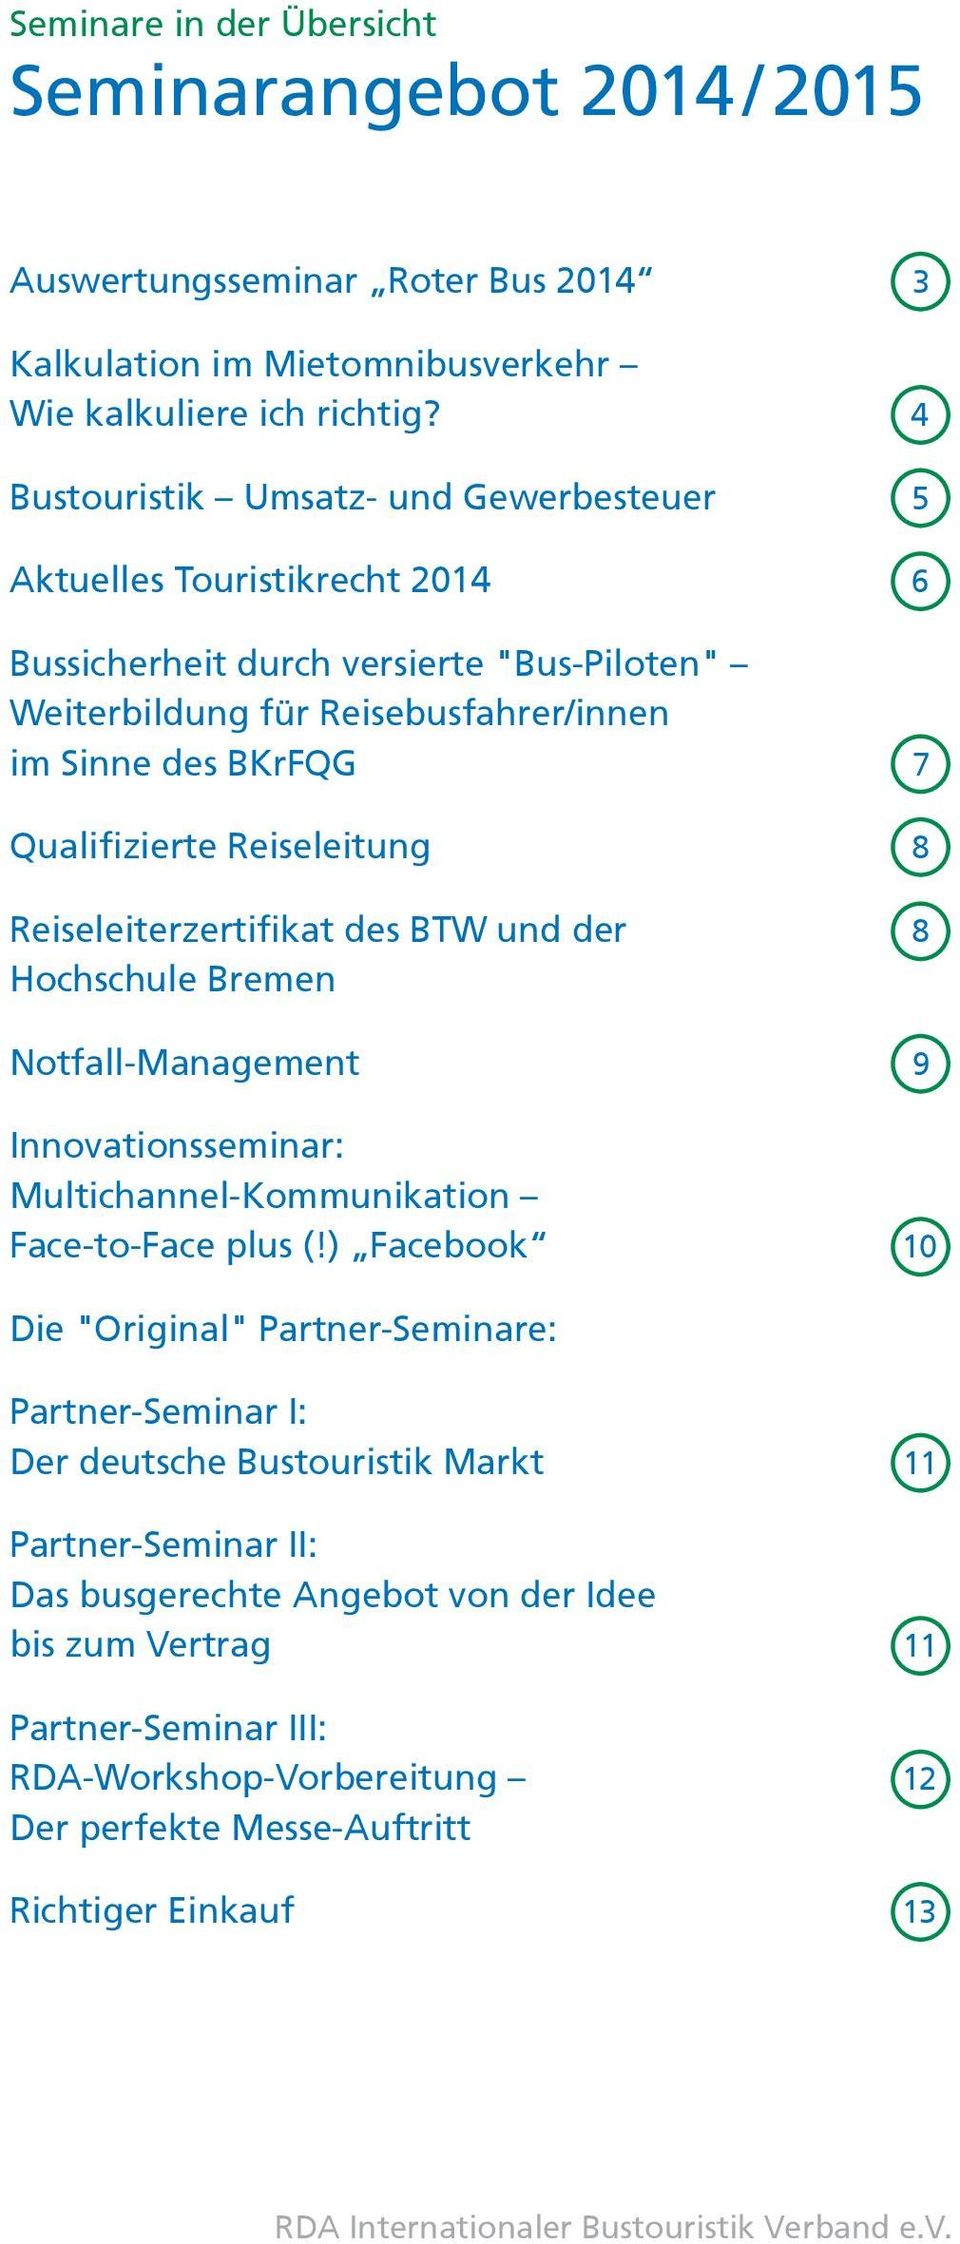 Reiseleitung 8 Reiseleiterzertifikat des BTW und der Hochschule Bremen 8 Notfall-Management 9 Innovationsseminar: Multichannel-Kommunikation Face-to-Face plus (!